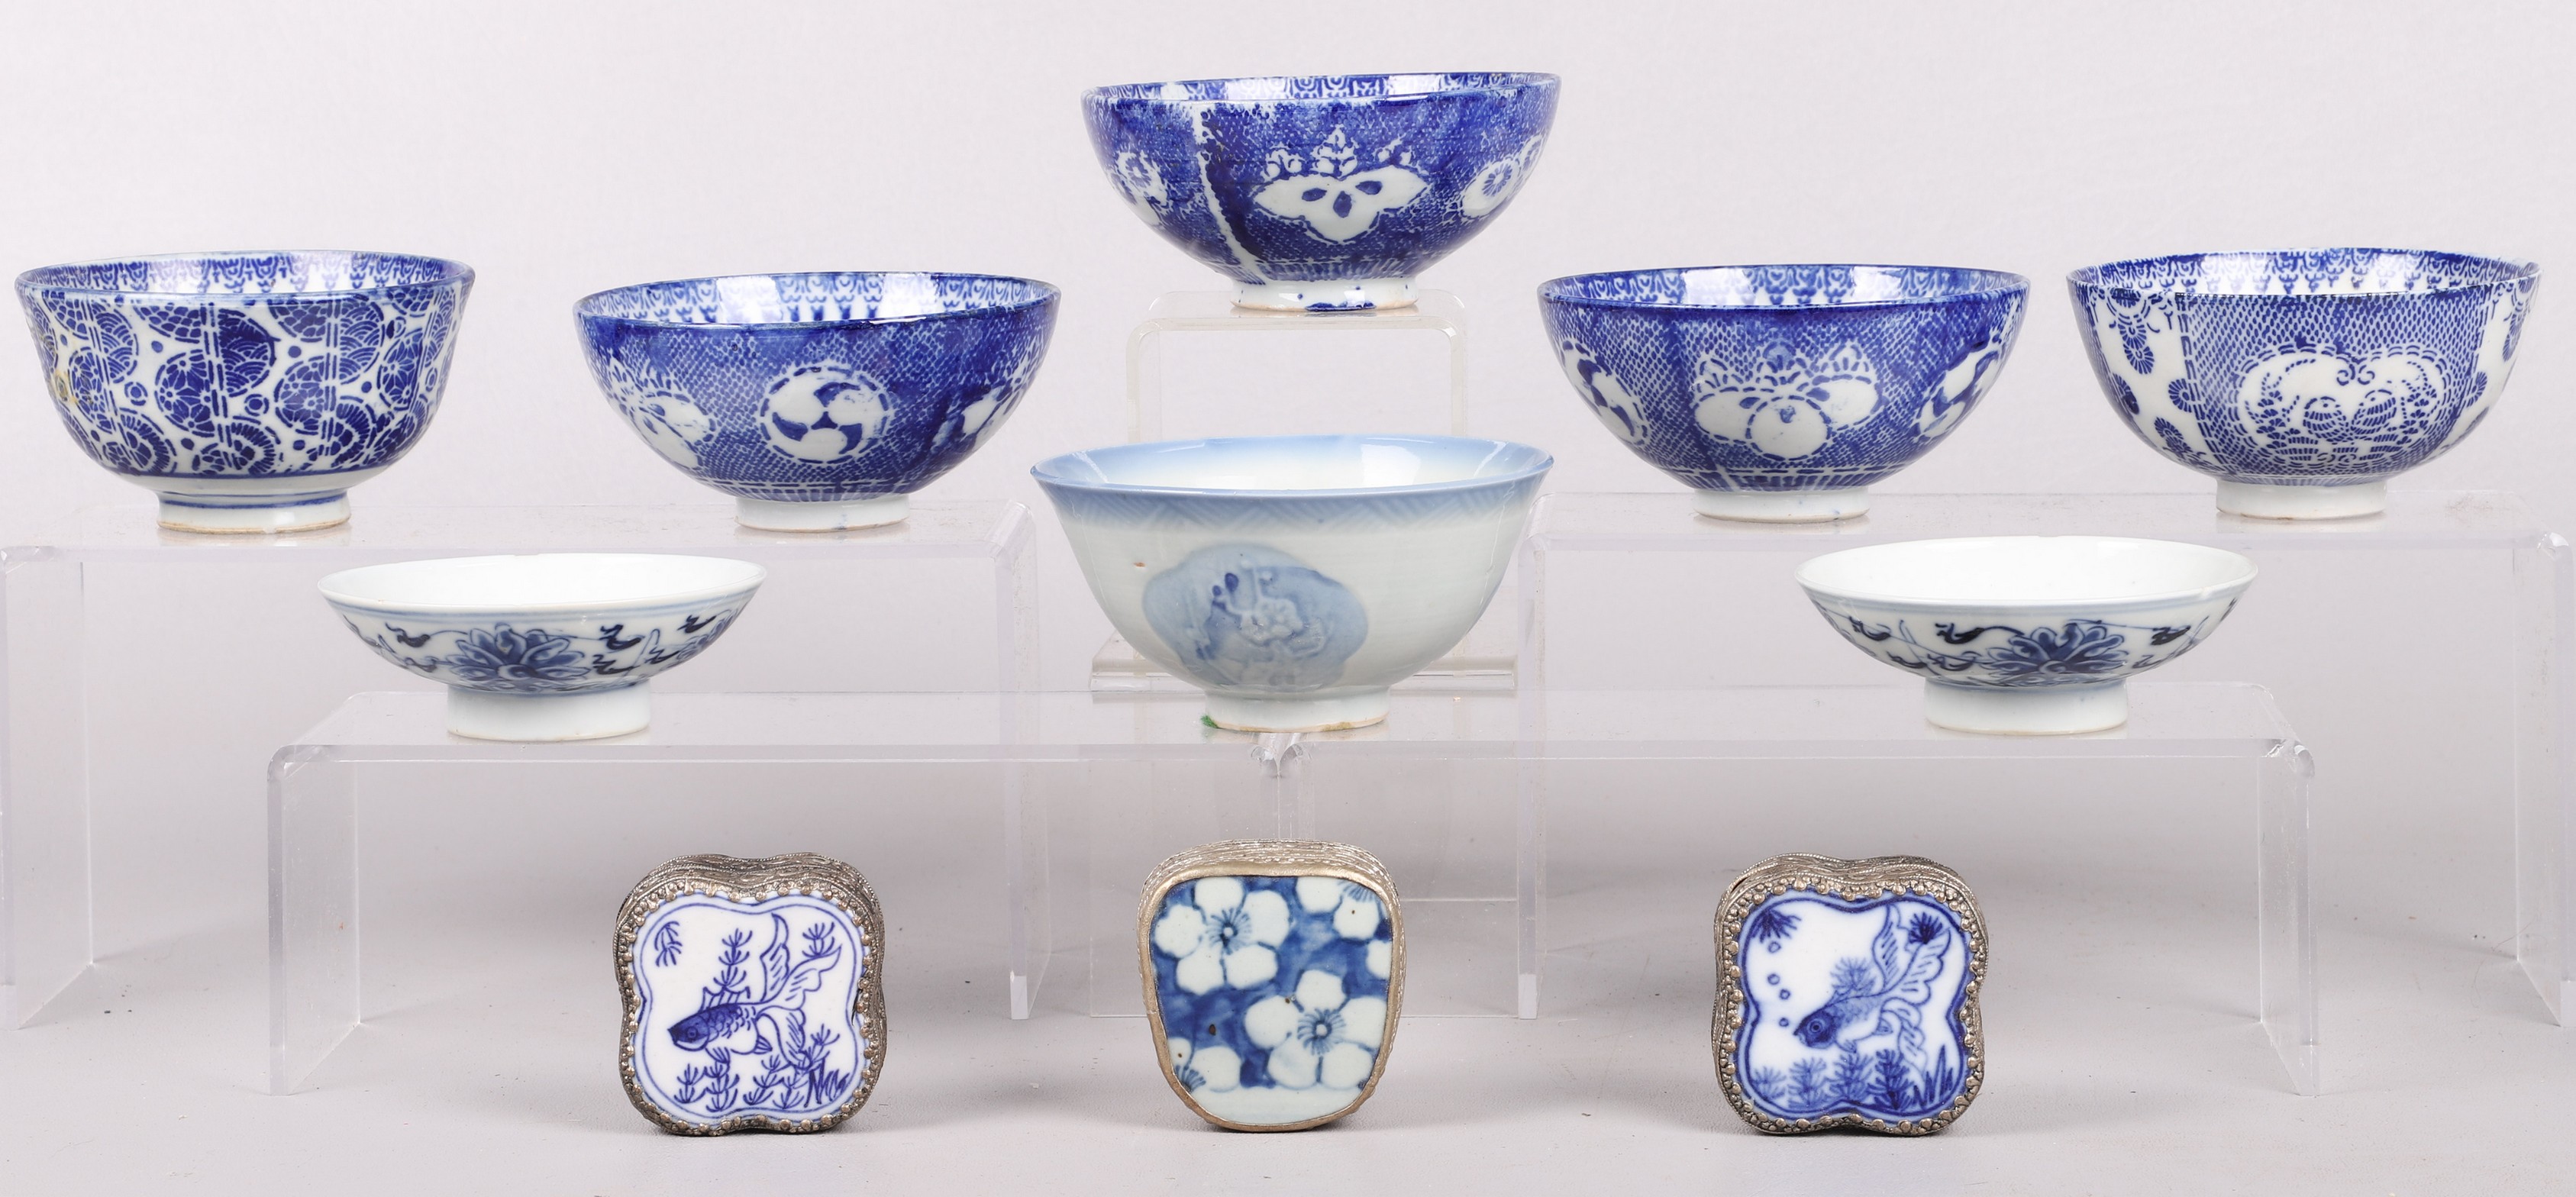  11 Pcs Asian blue white porcelain 2e0892